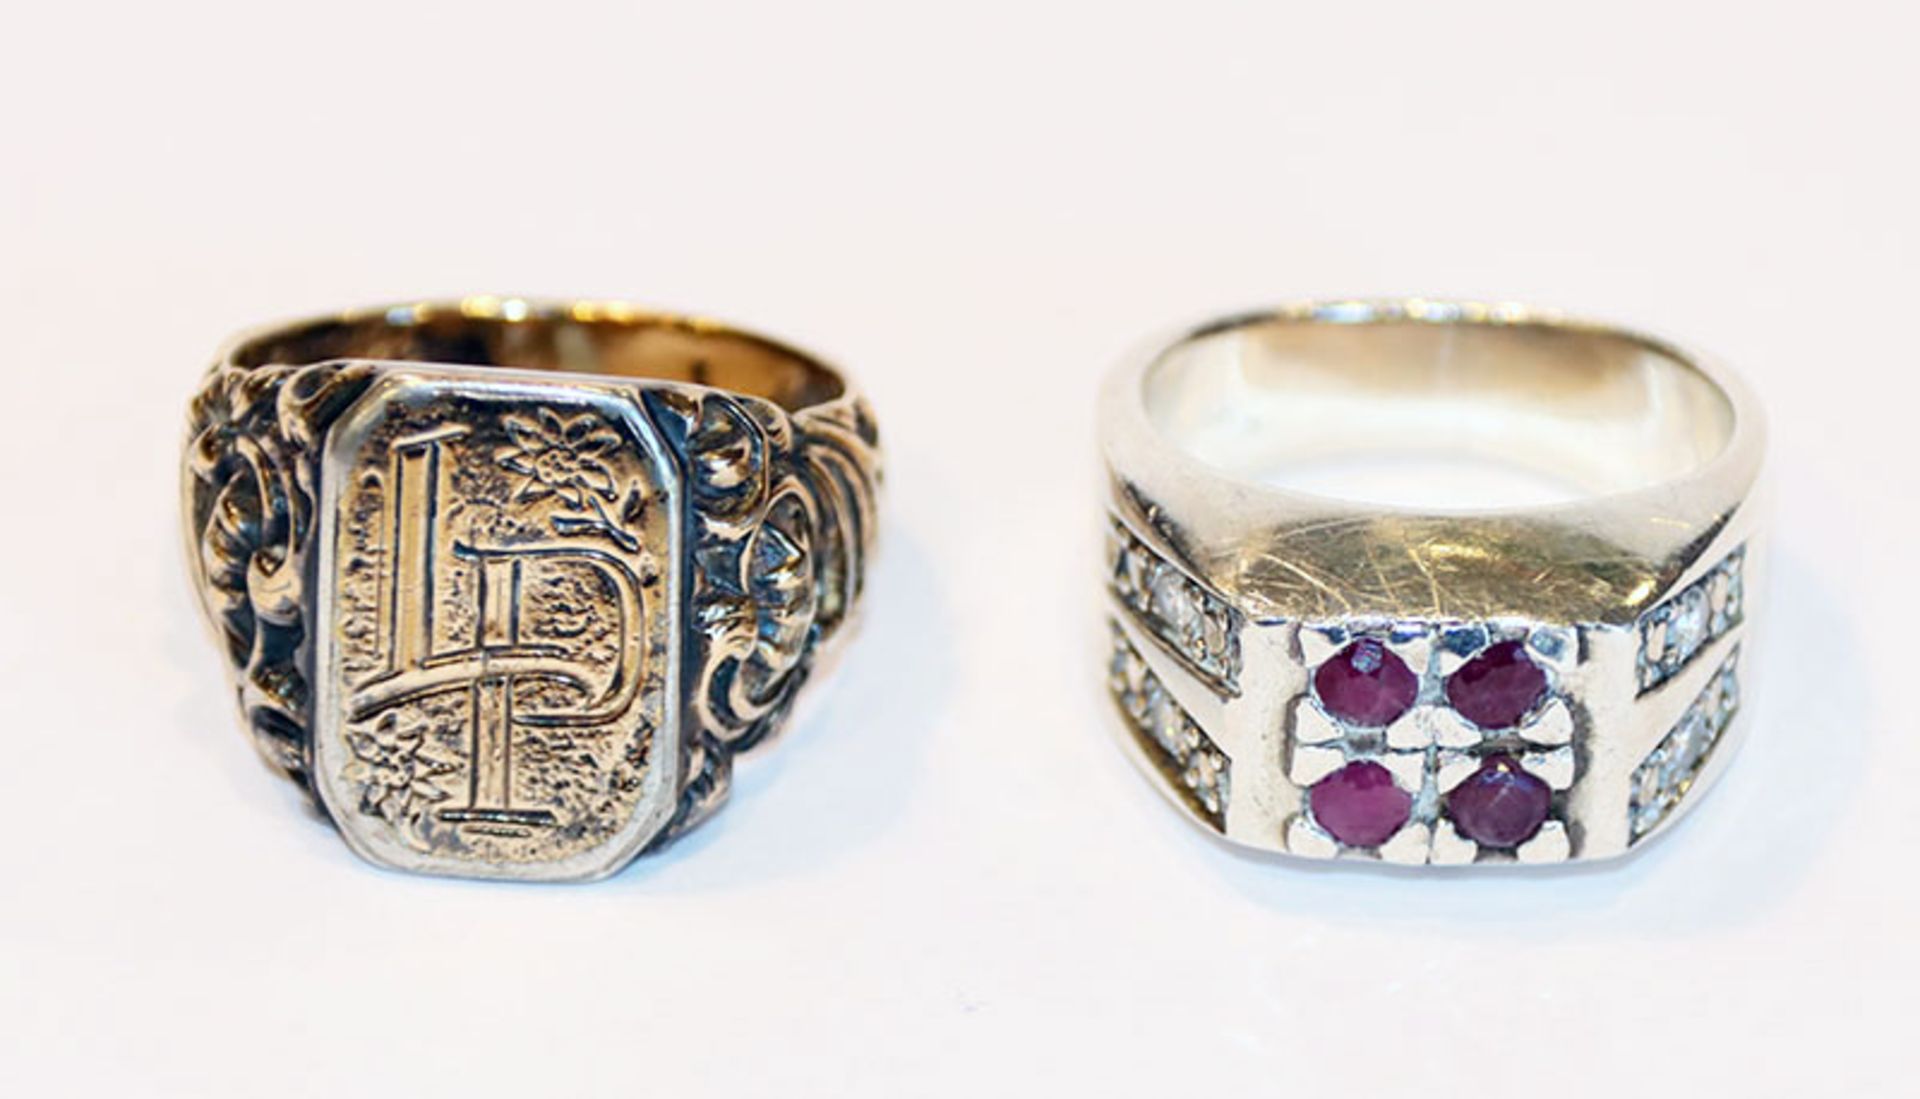 2 Ringe: ein Ring Silber/vergoldet mit Monogrammgravur LP und Reliefdekor, Gr. 66, und Silber Ring